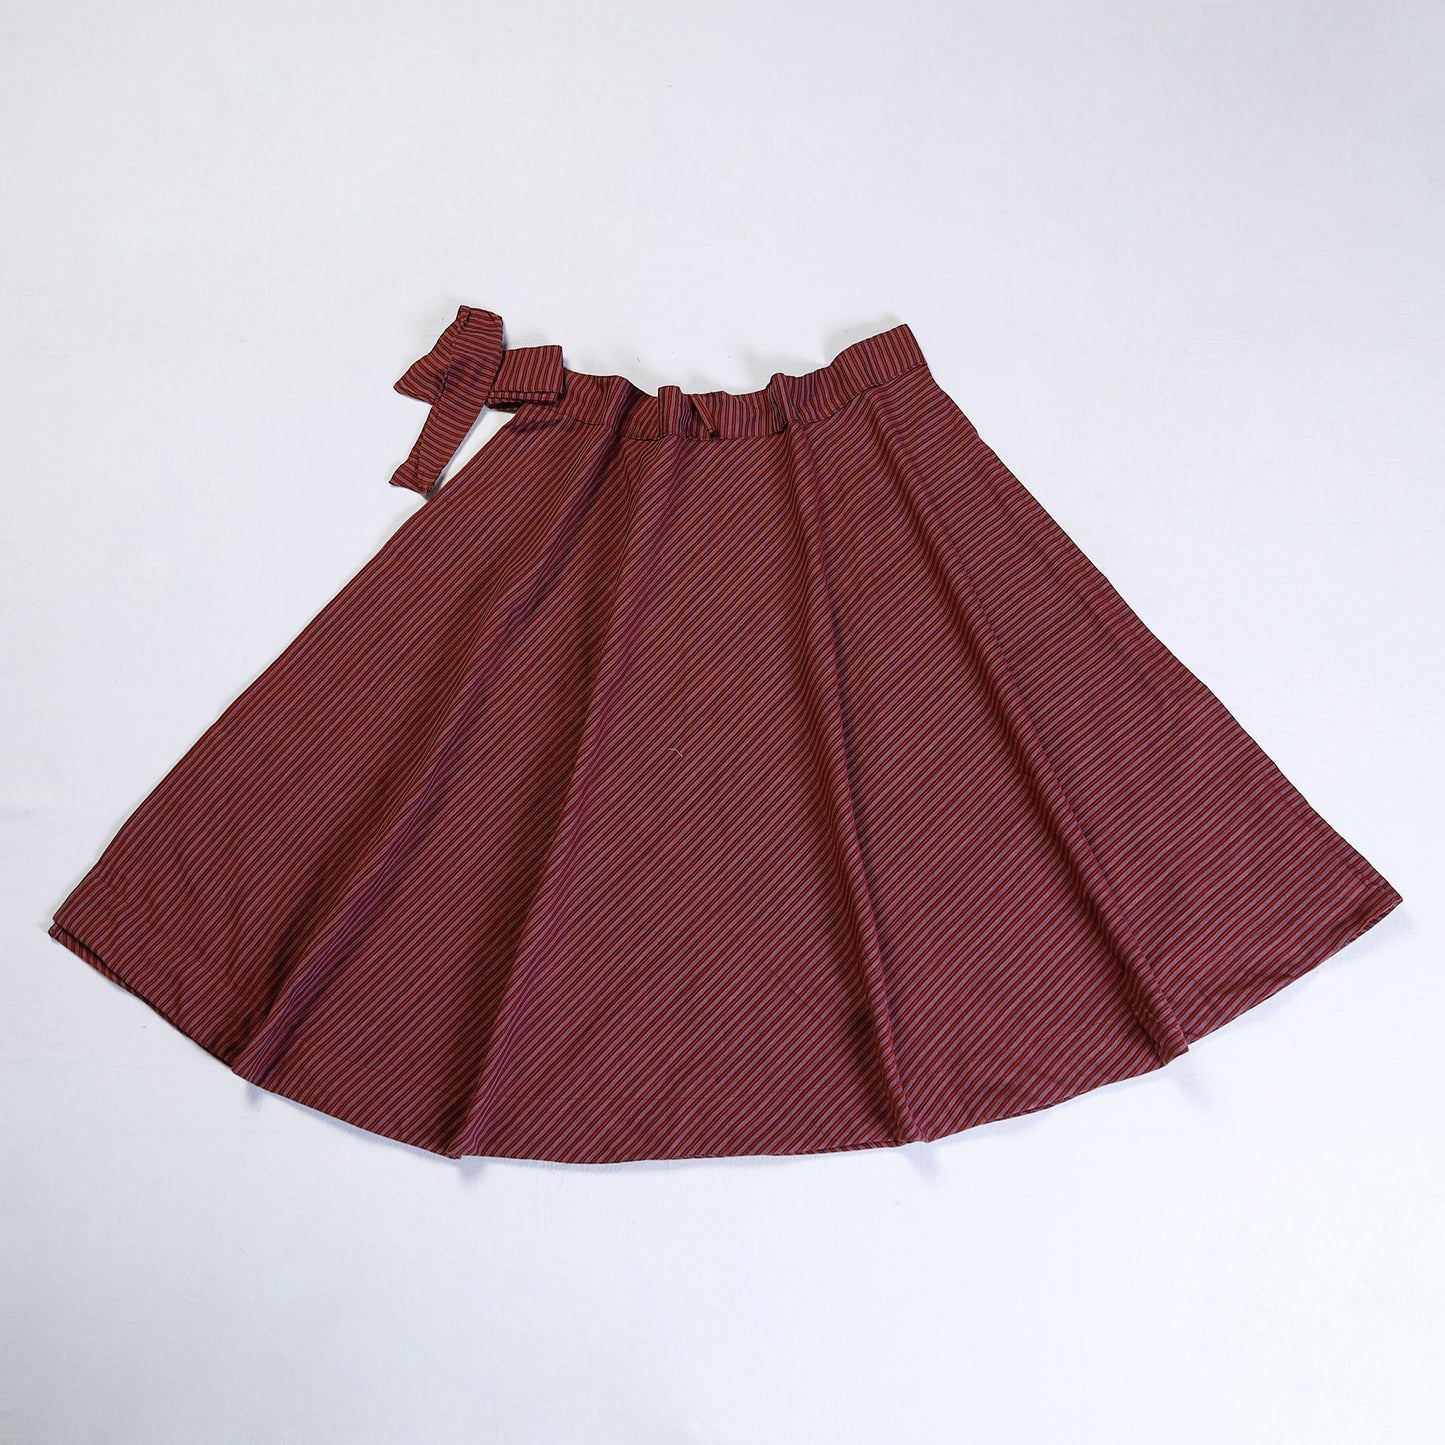 Maroon - Plain Handloom Jhiri Cotton Wrap Around Skirt